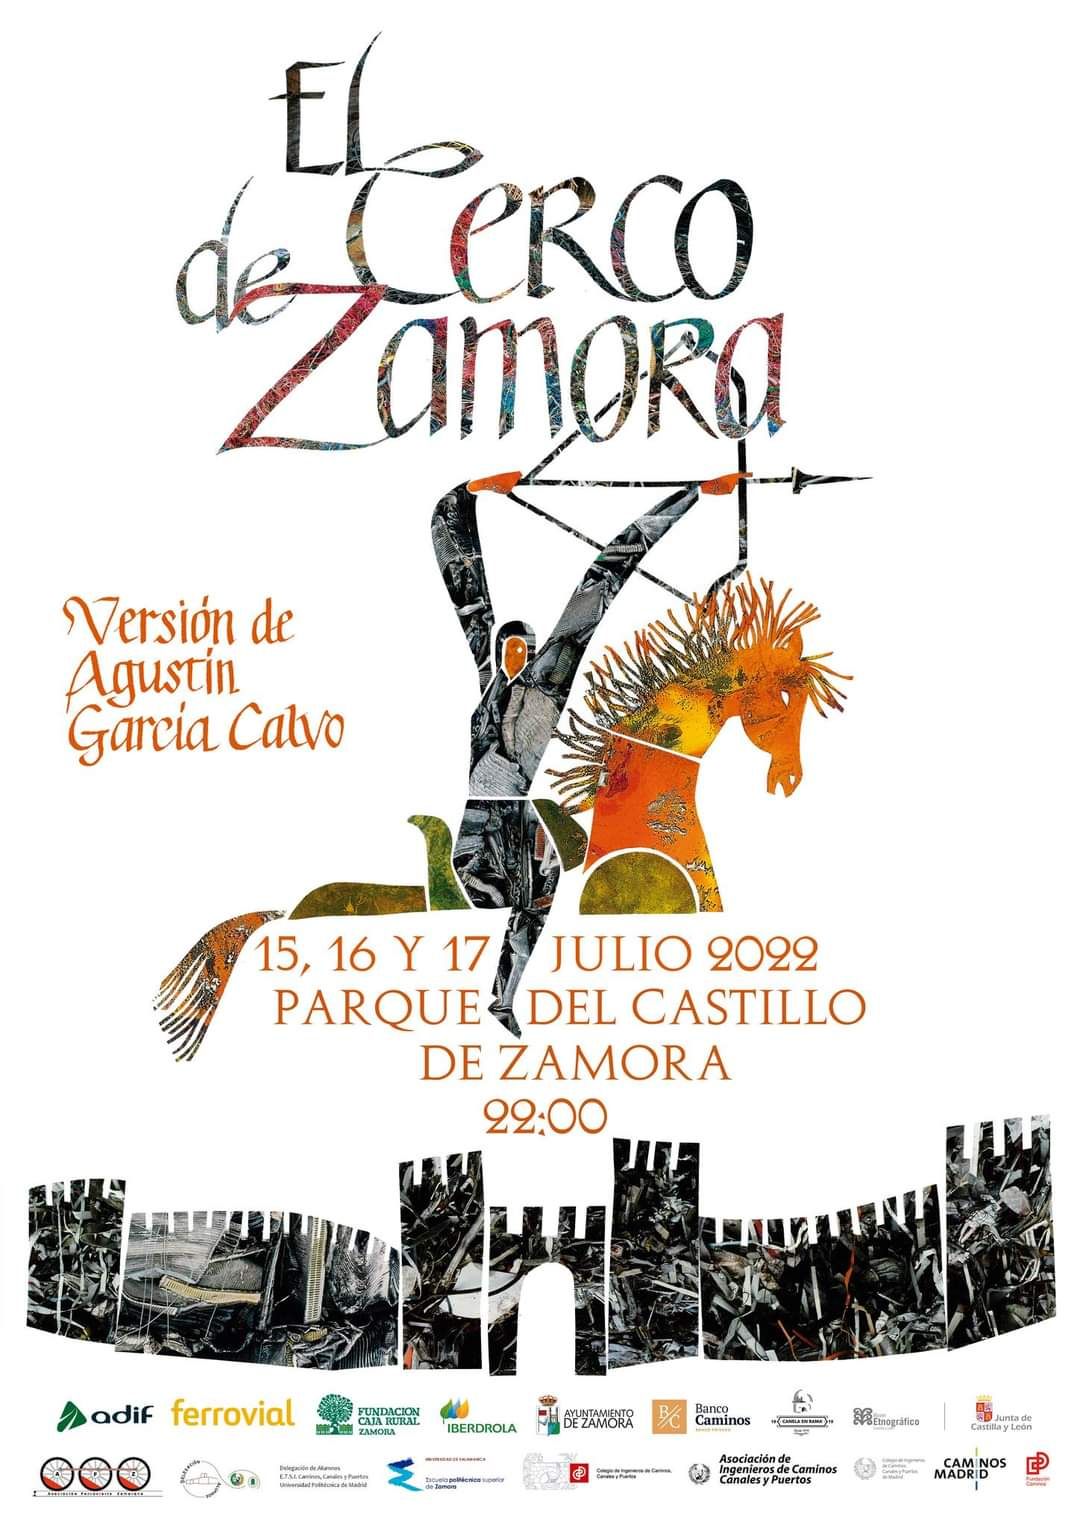 Cartel de El Cerco de Zamora